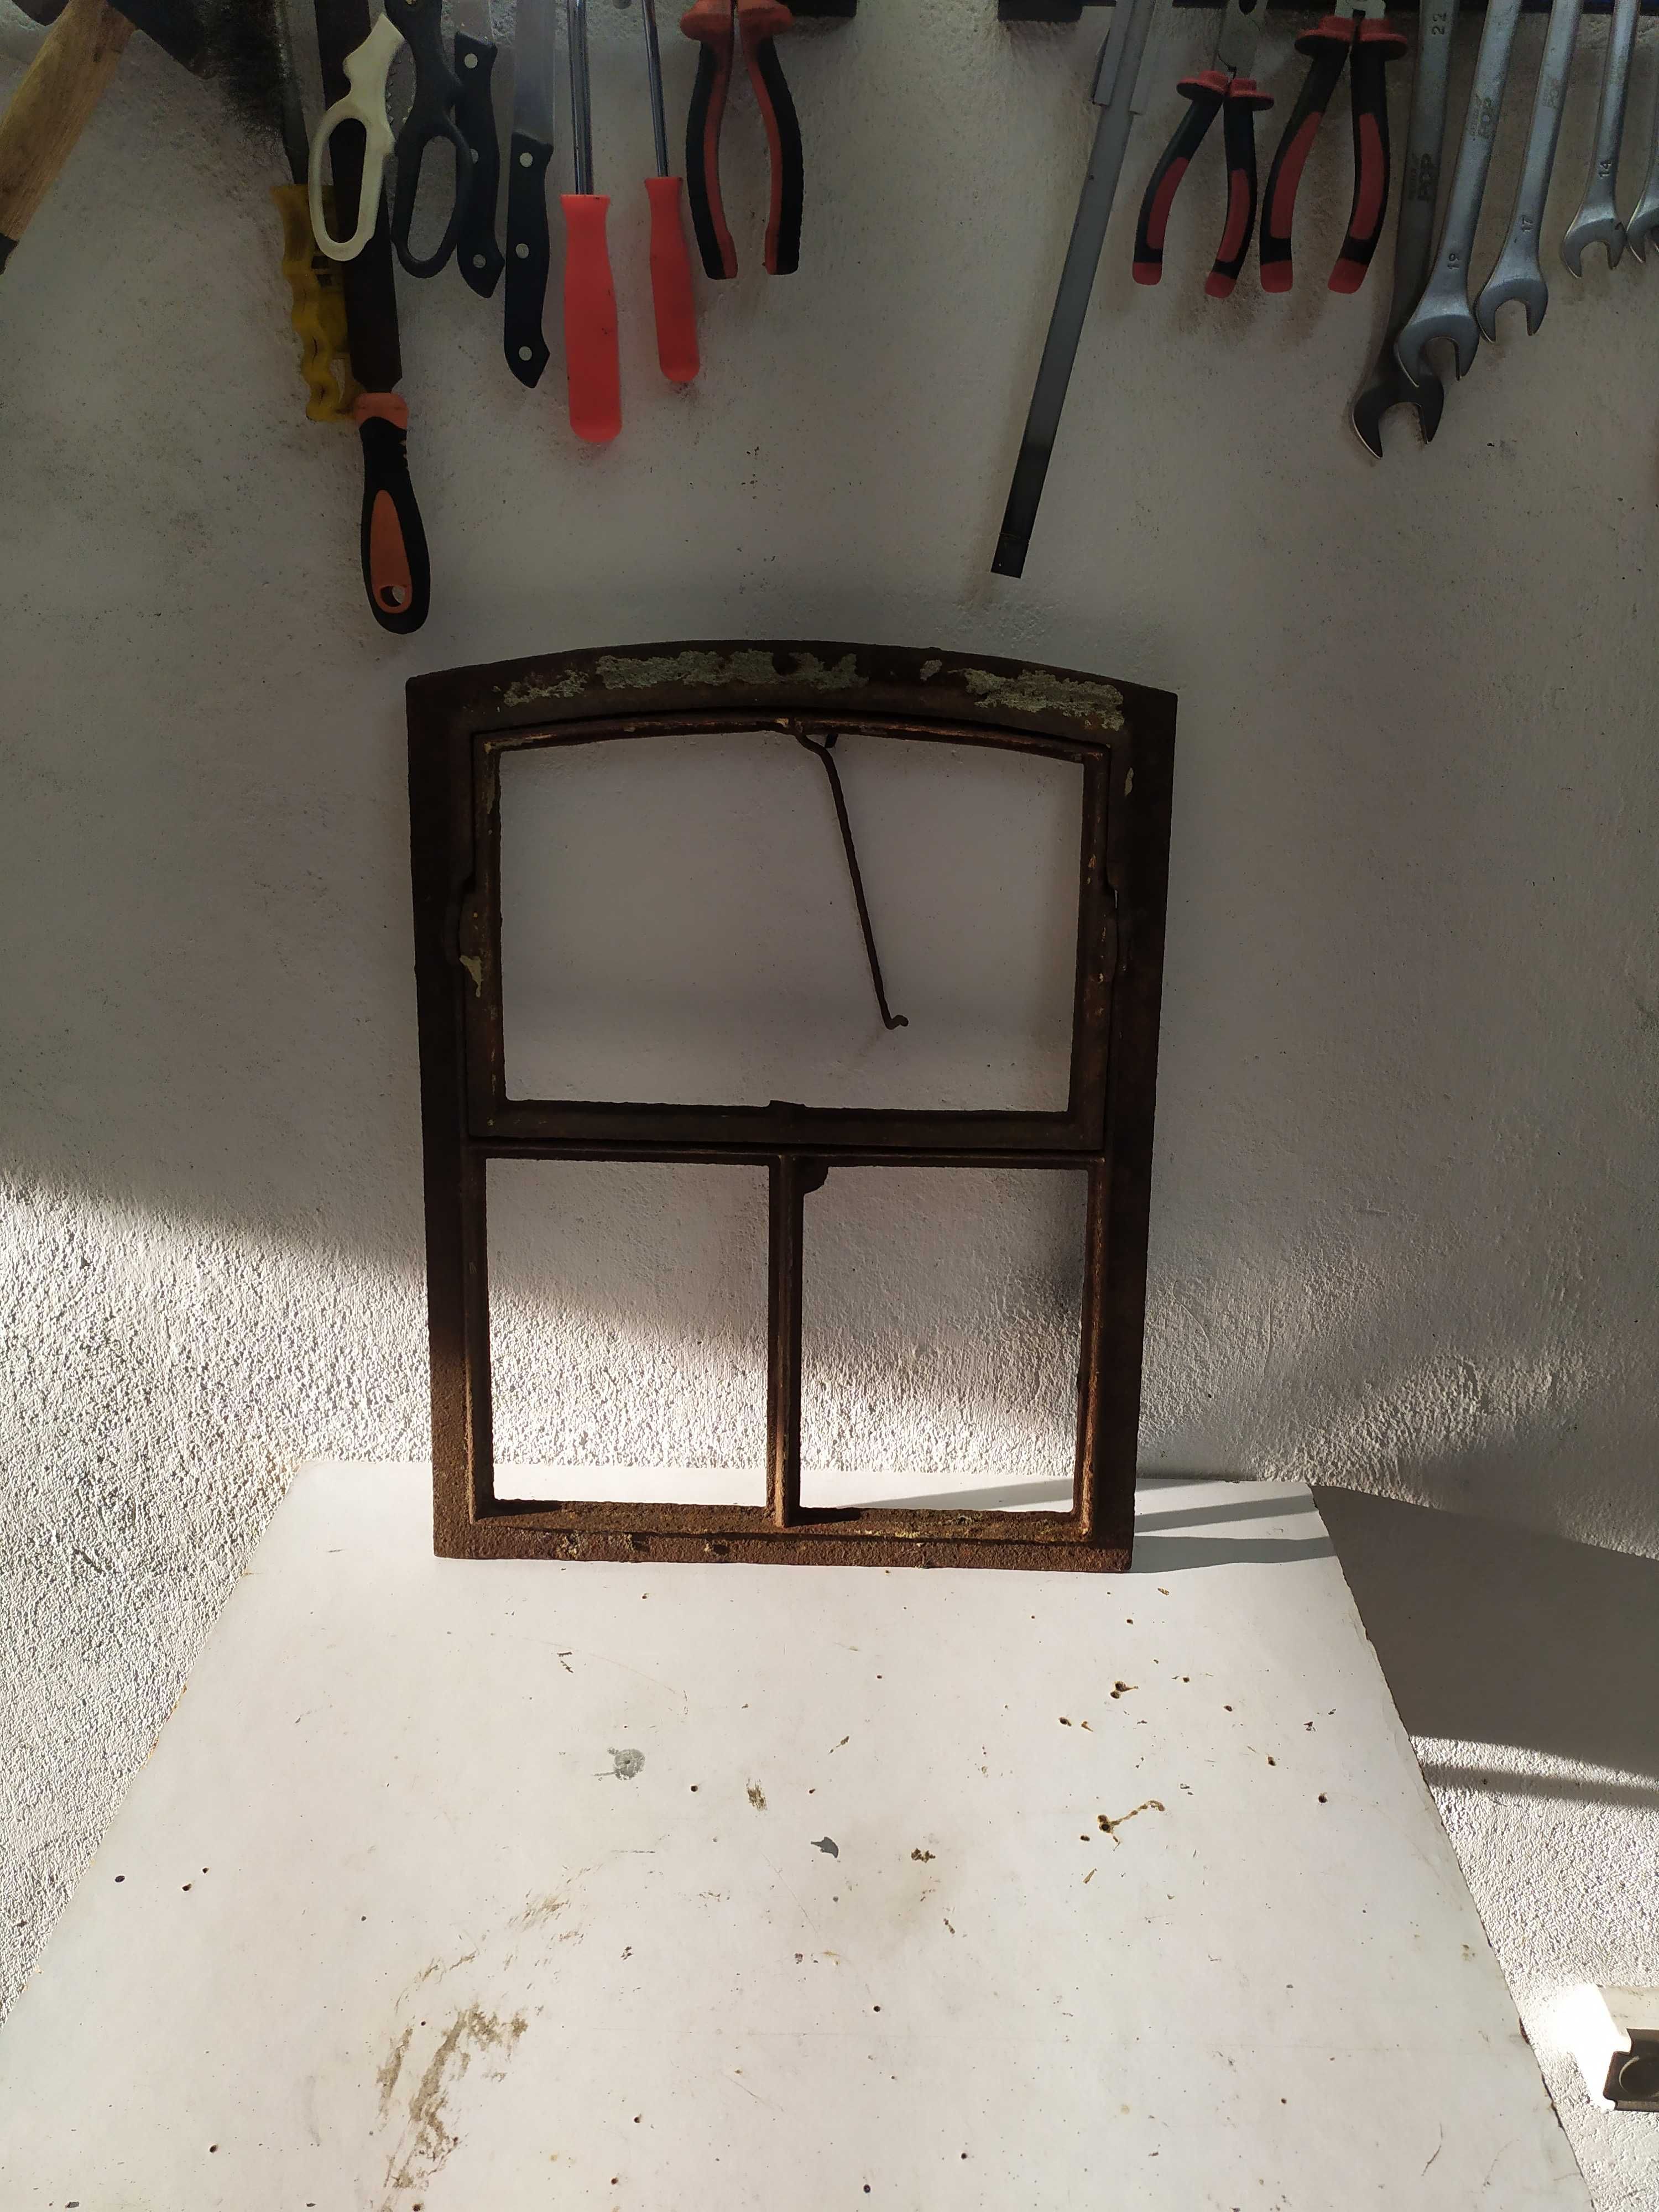 Stare metalowe okno stara rama okienna żeliwna uchylna nr 116